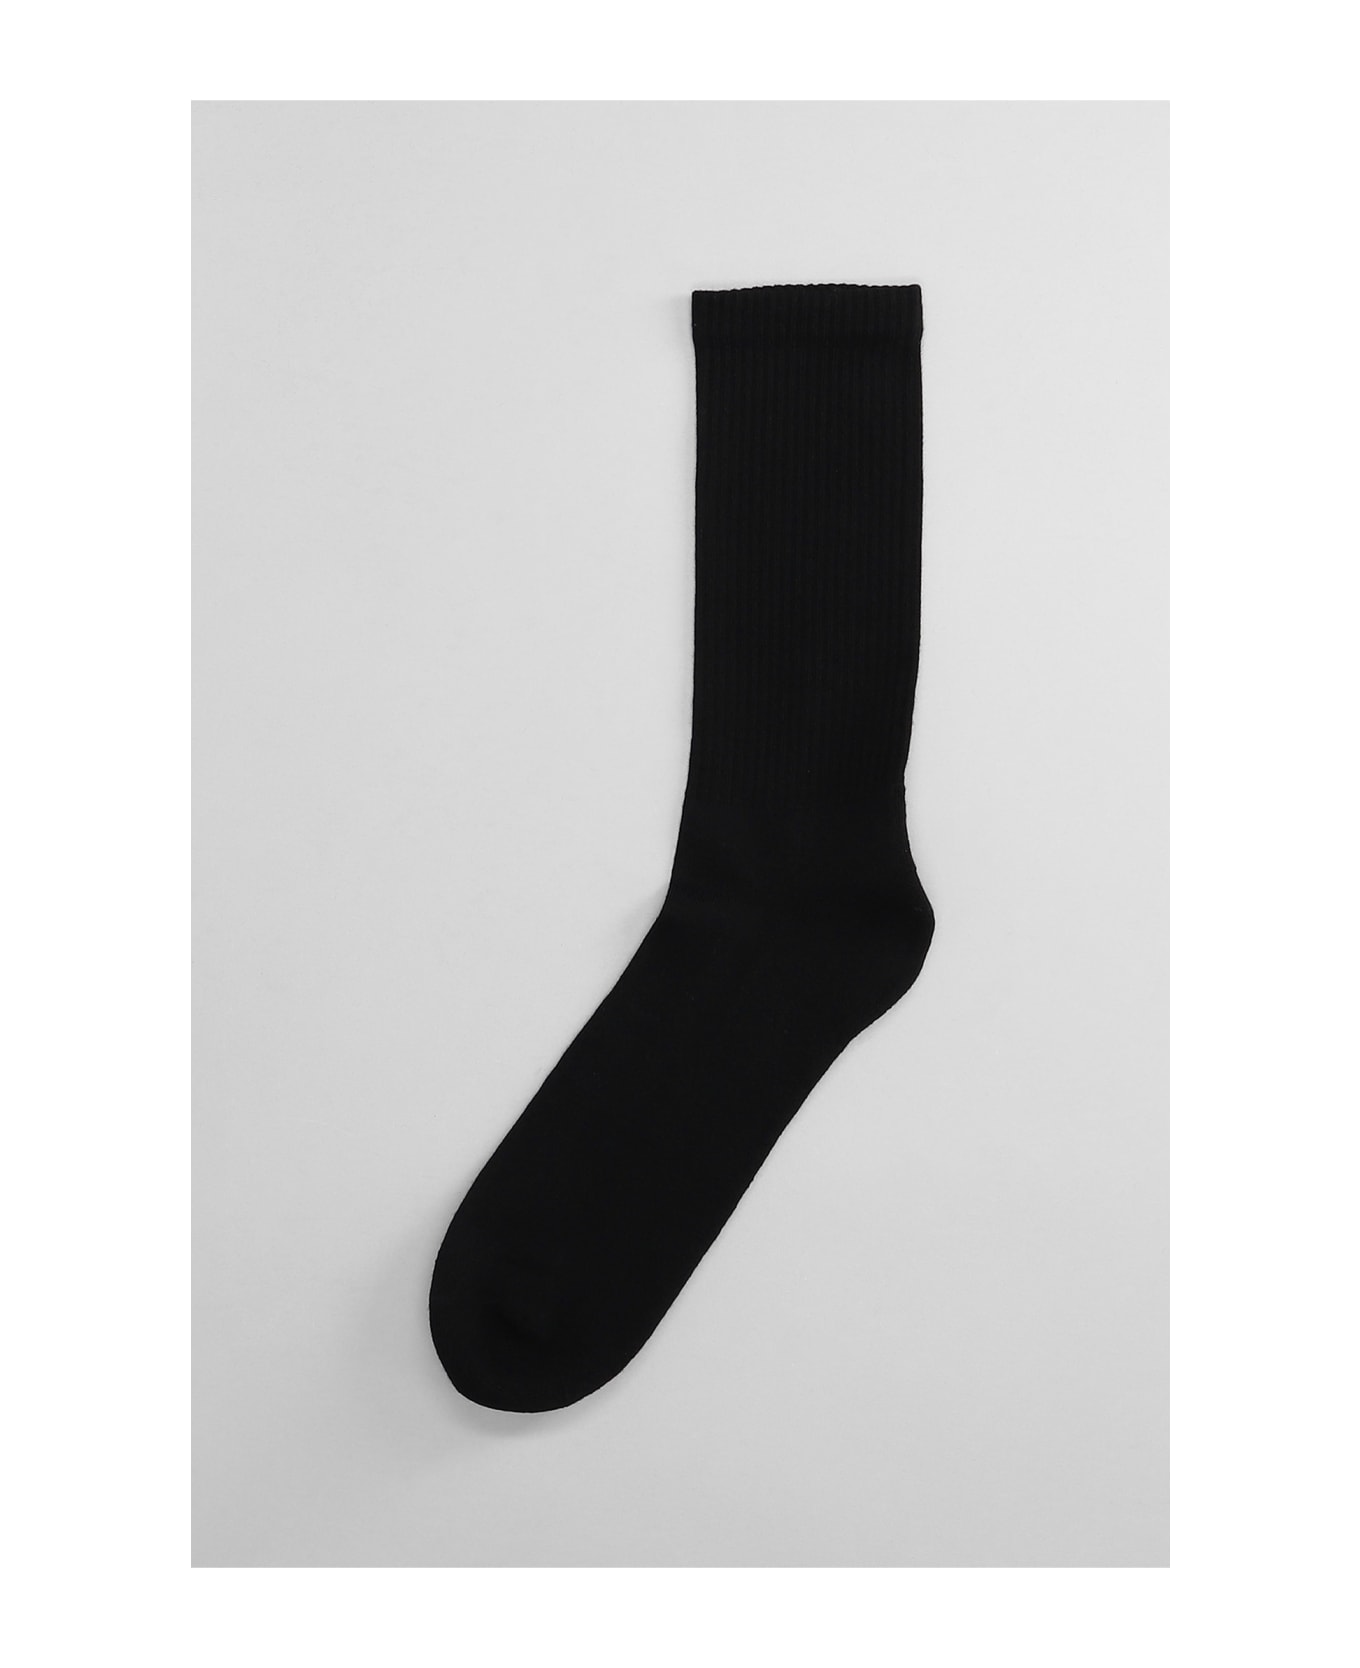 44 Label Group Socks In Black Cotton - black